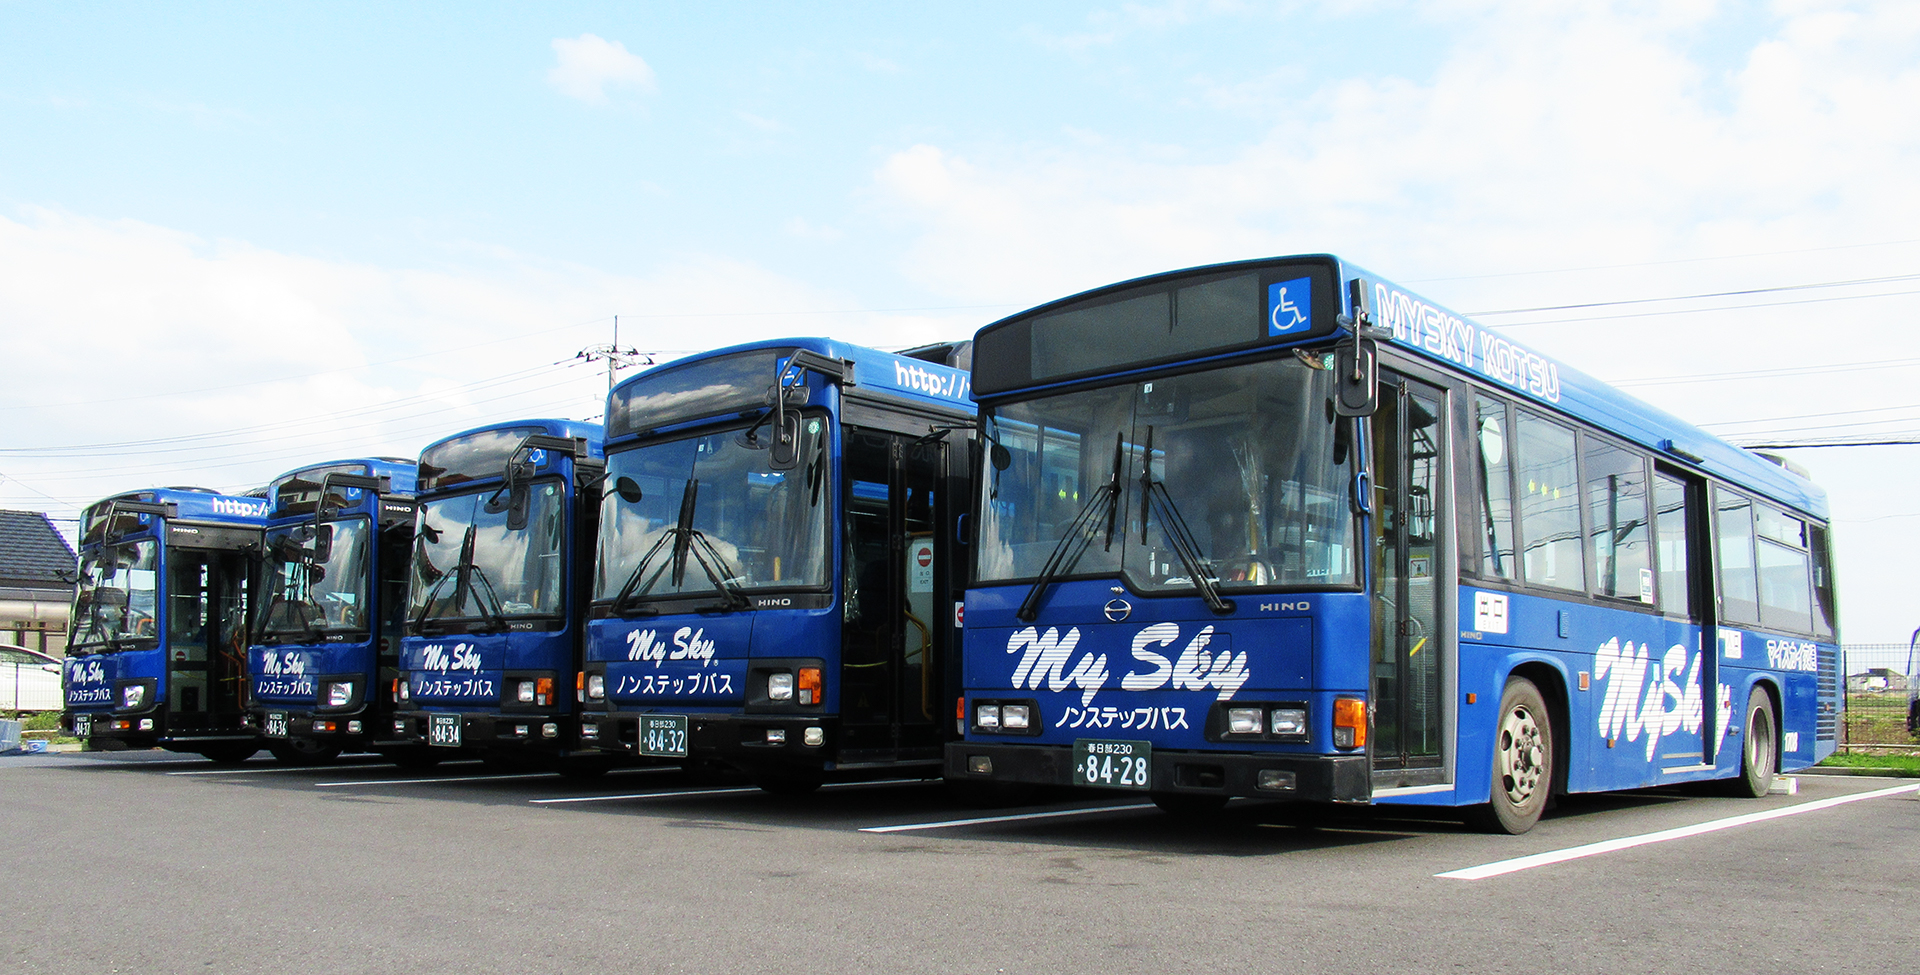 埼玉県三郷市の路線バス・貸切バス、マイスカイ交通株式会社